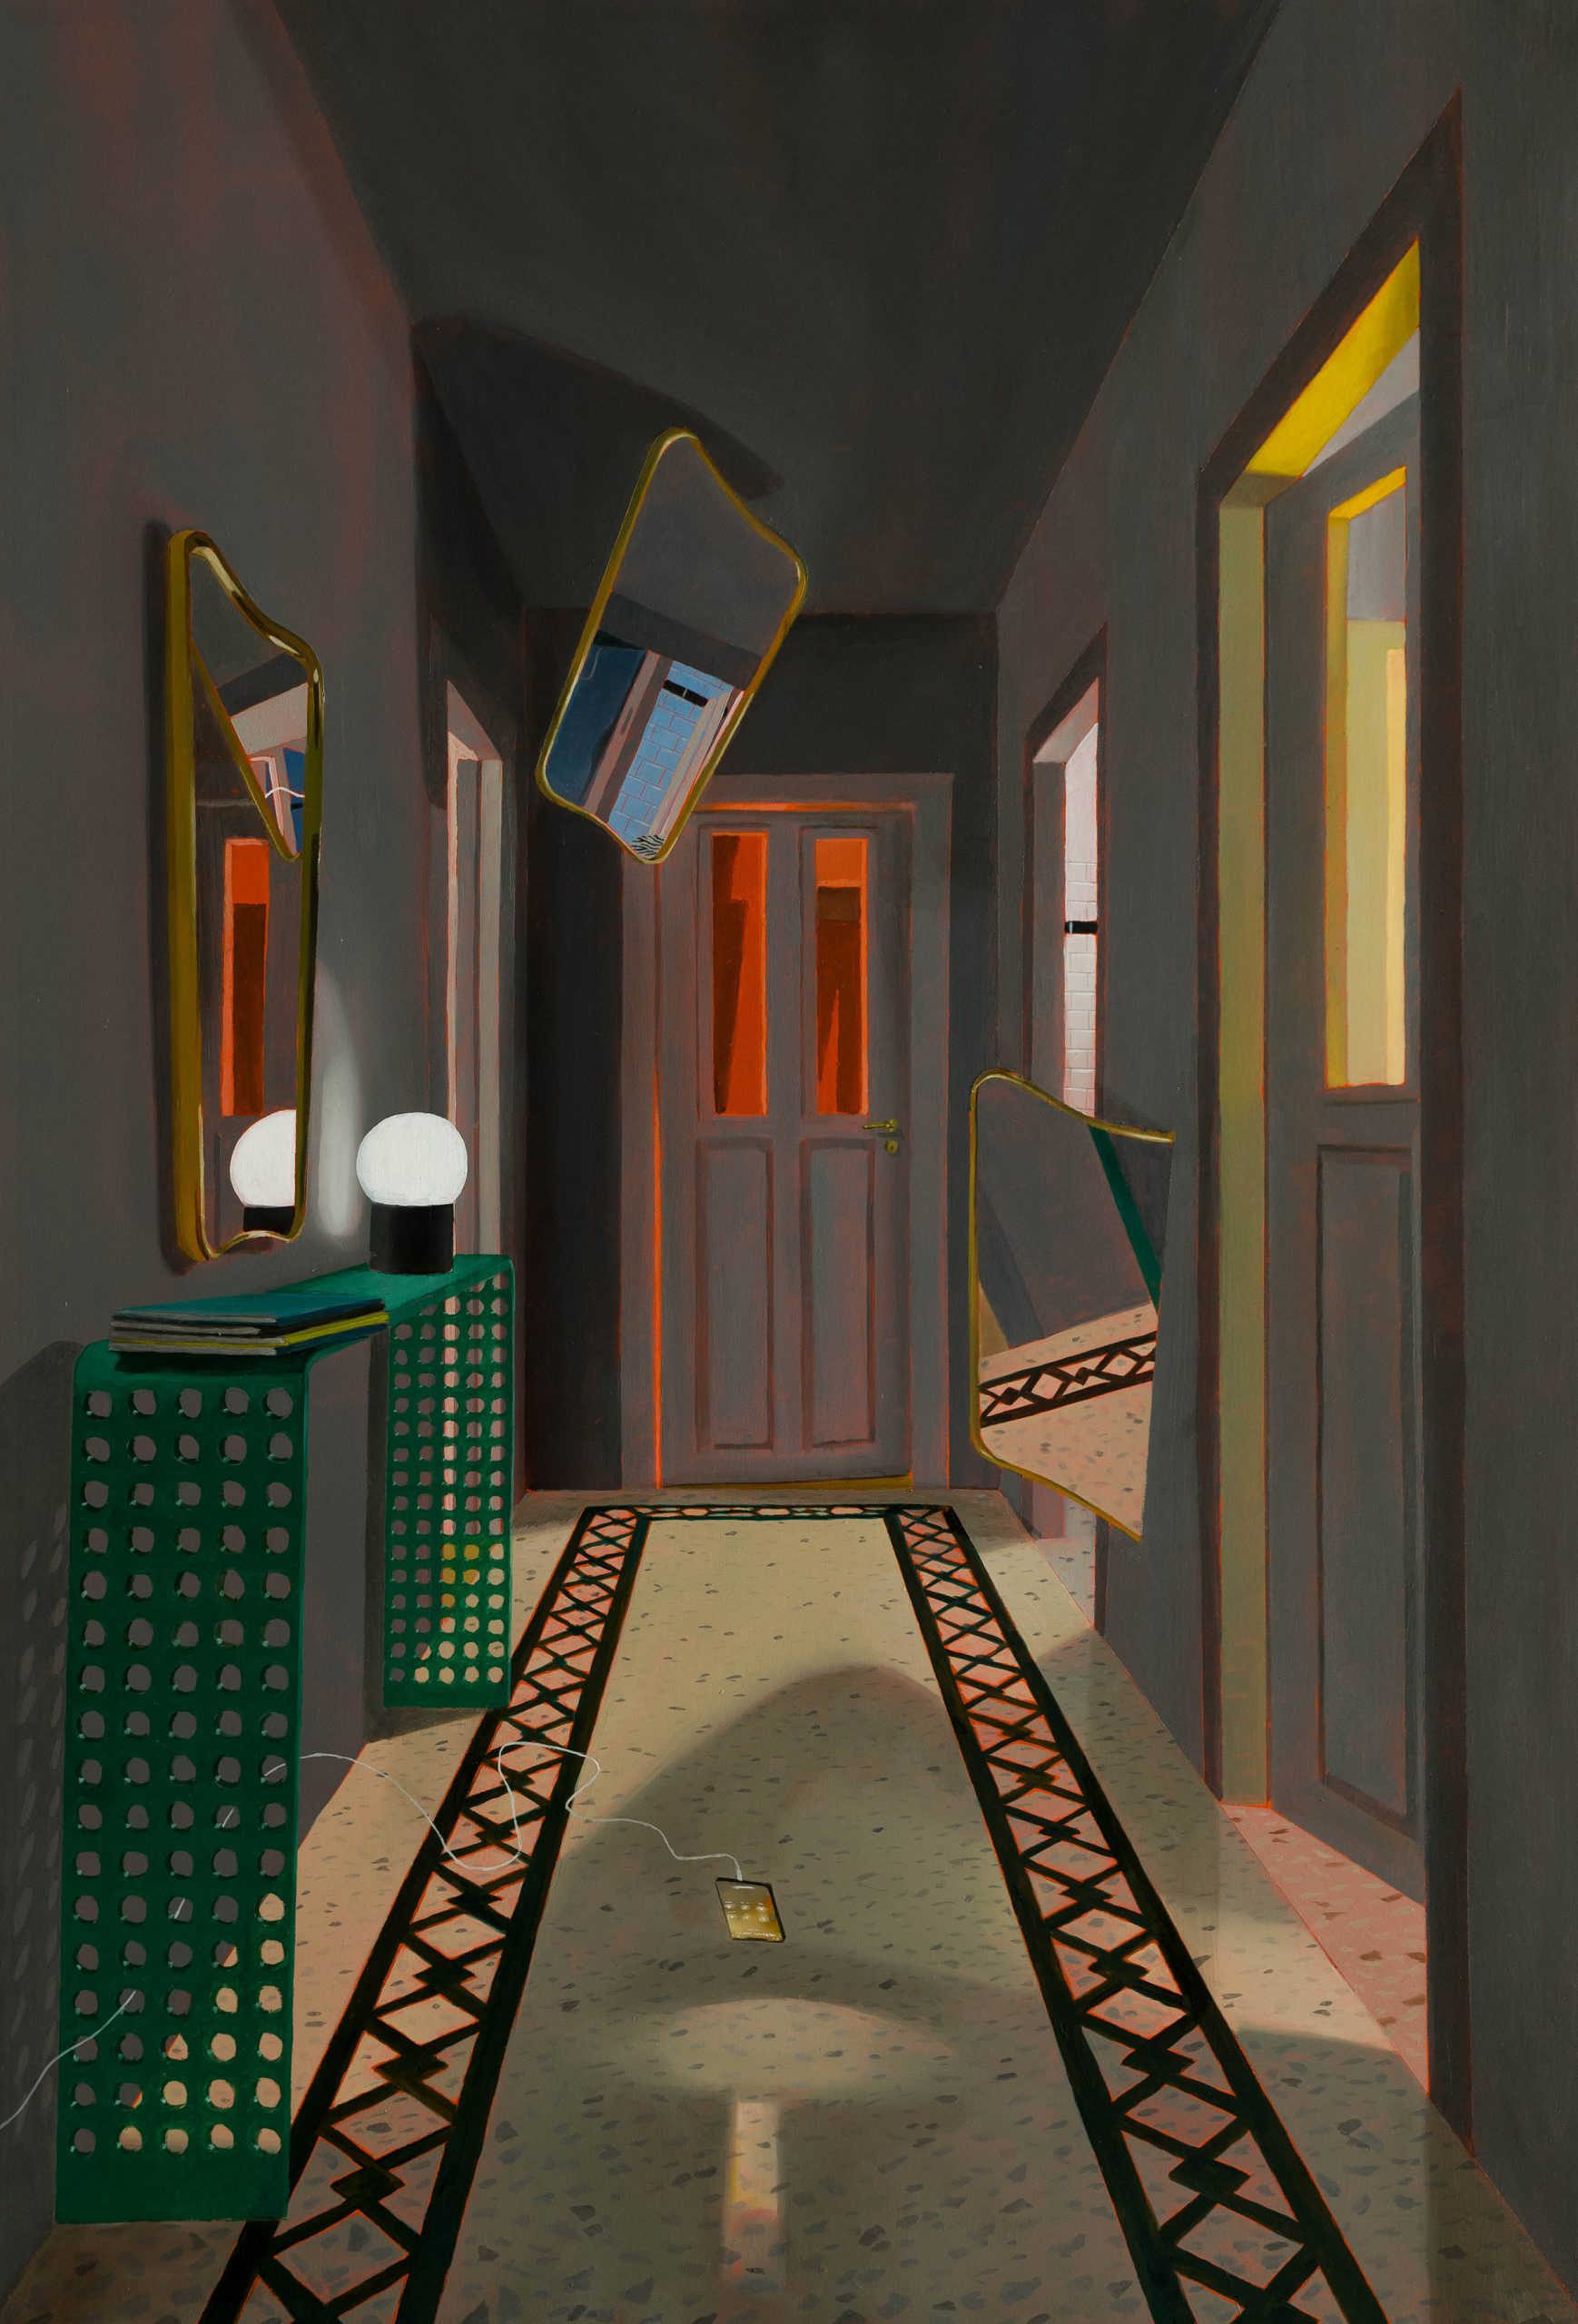 Dario Maglionico, Studio del buio, 2023, sconosciuto, oil on canvas, 80 x 55 cm